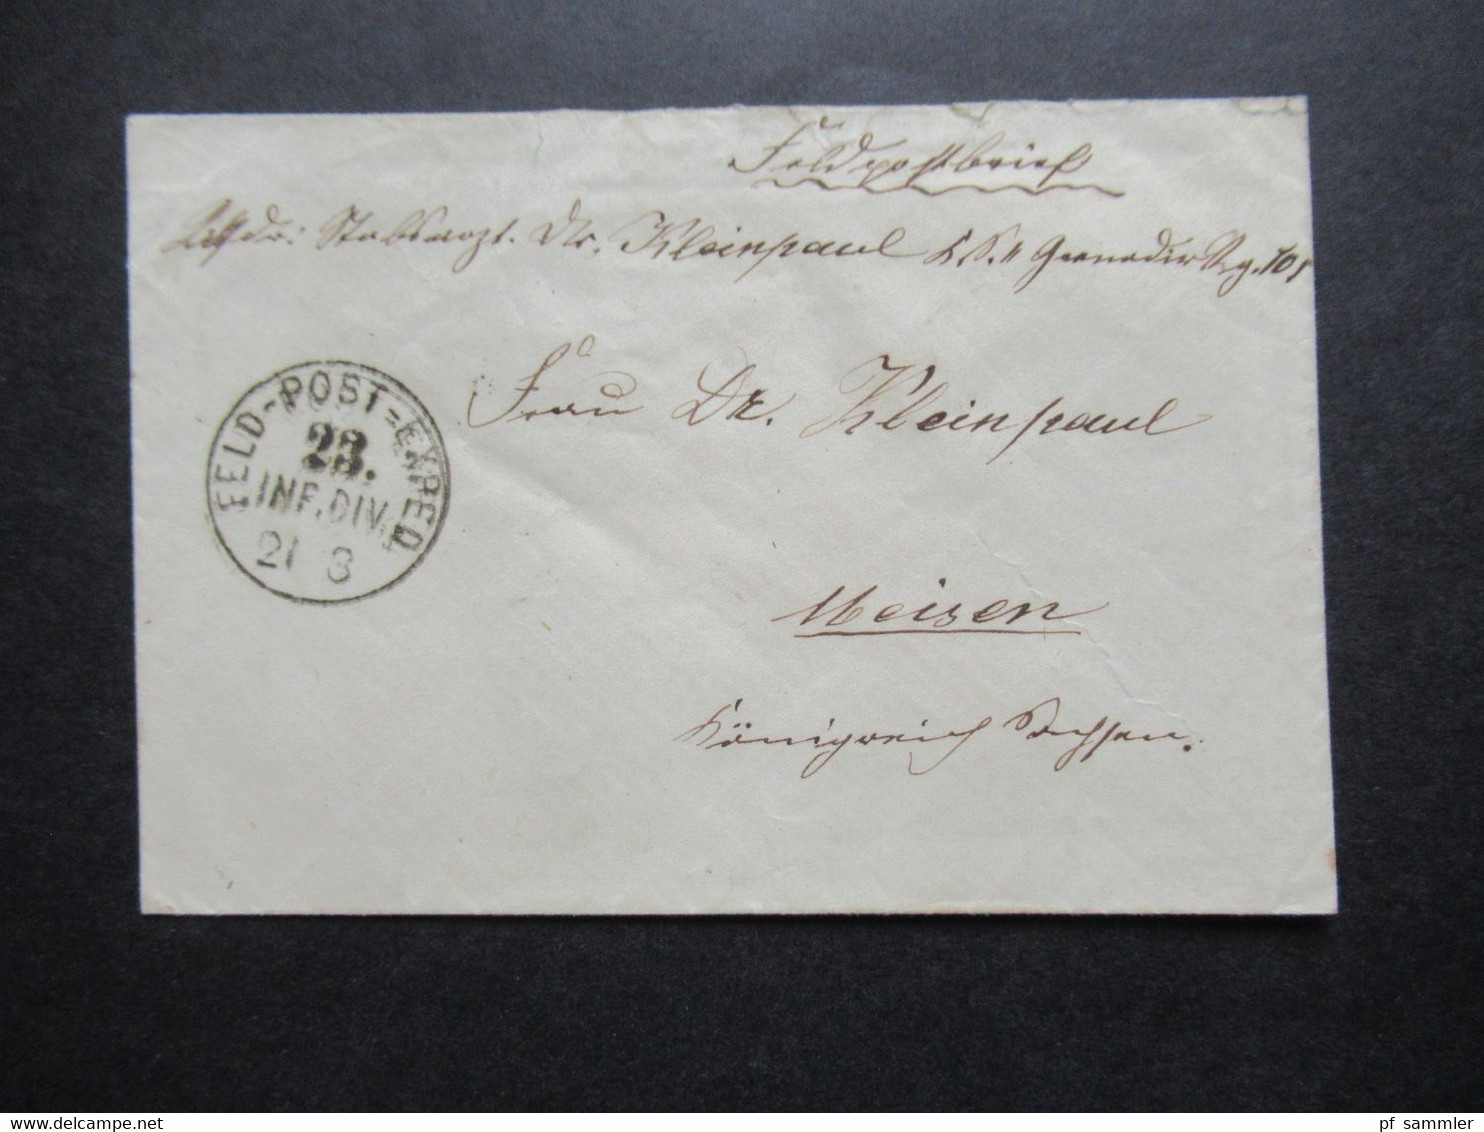 Feldpost Deutsch Französischer Krieg 1870 / 71 Stempel Feld - Post Exped. 23. Inf. Div. Nach Meissen Gesendet - Guerre De 1870